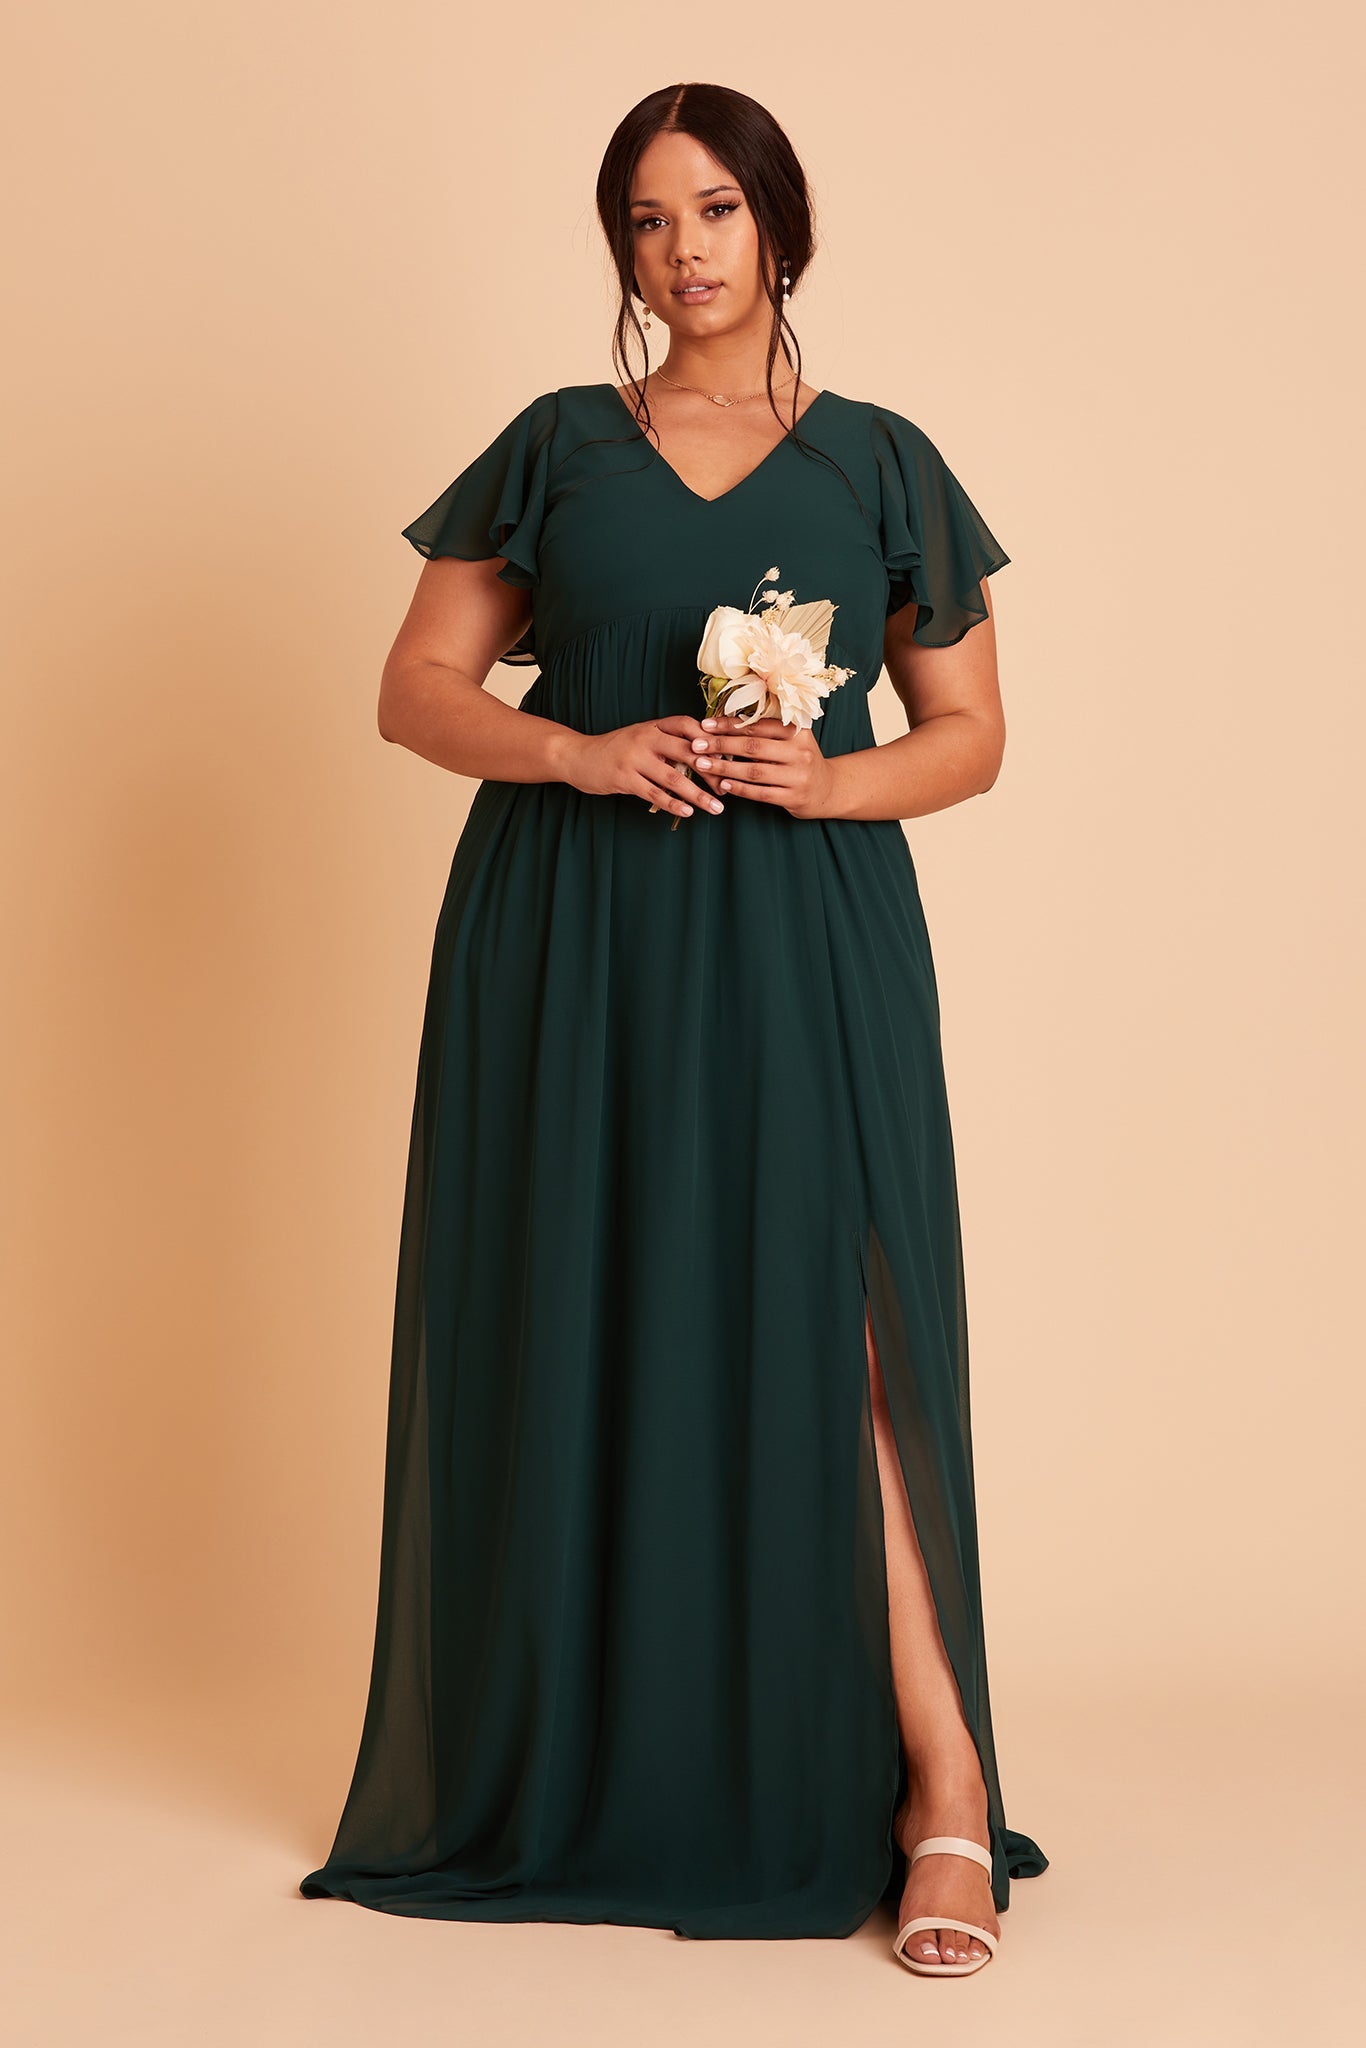 Hannah Empire Bridesmaid Dress in Emerald